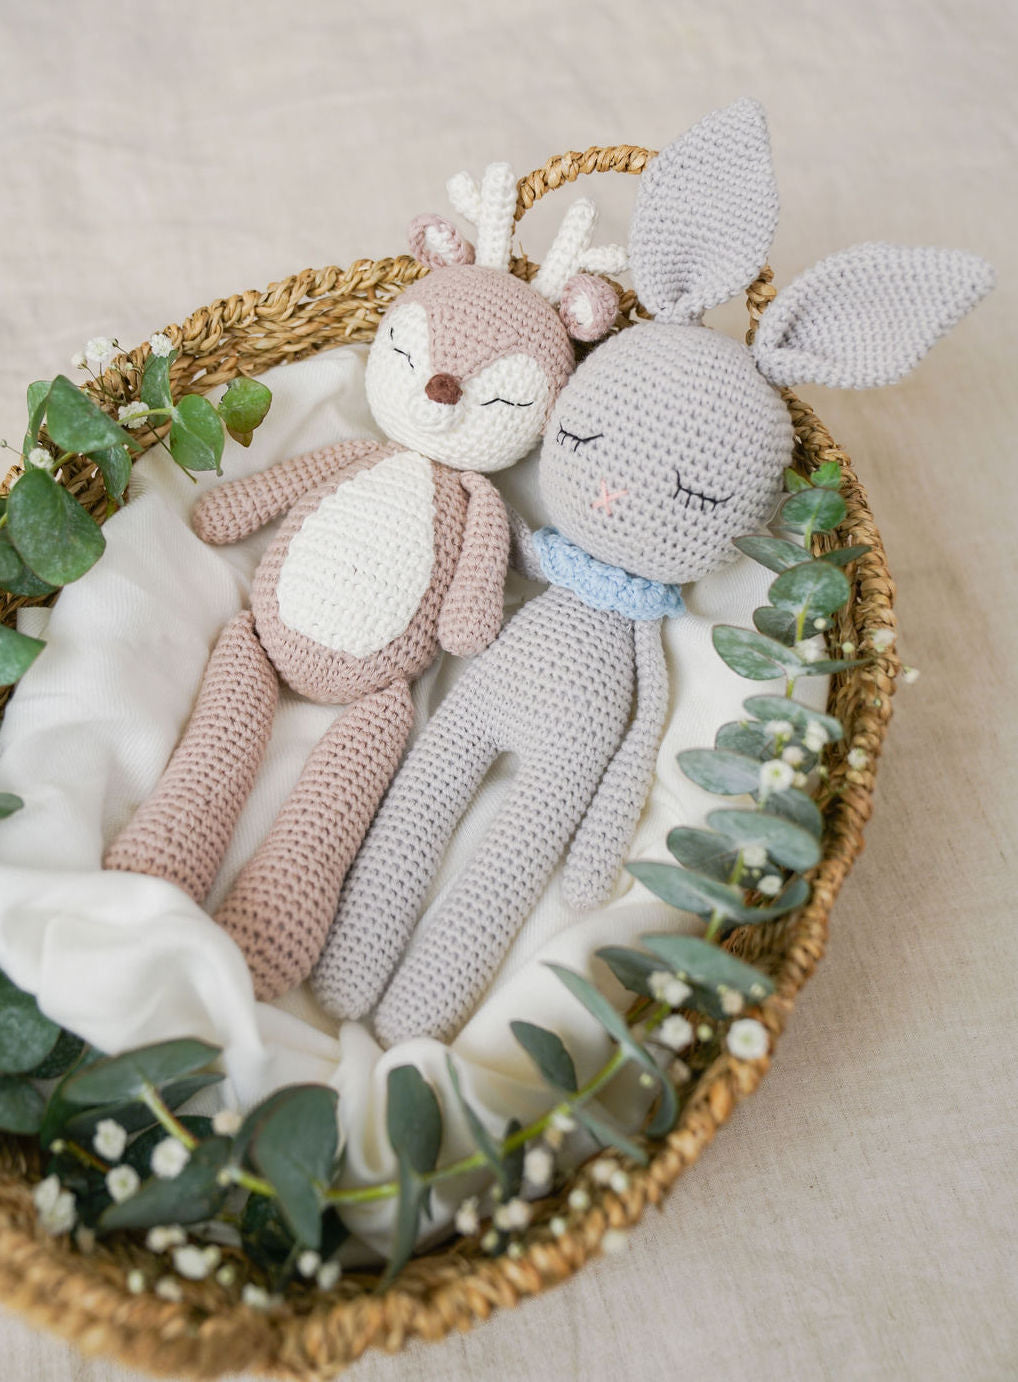 Gray Crochet Bunny Doll